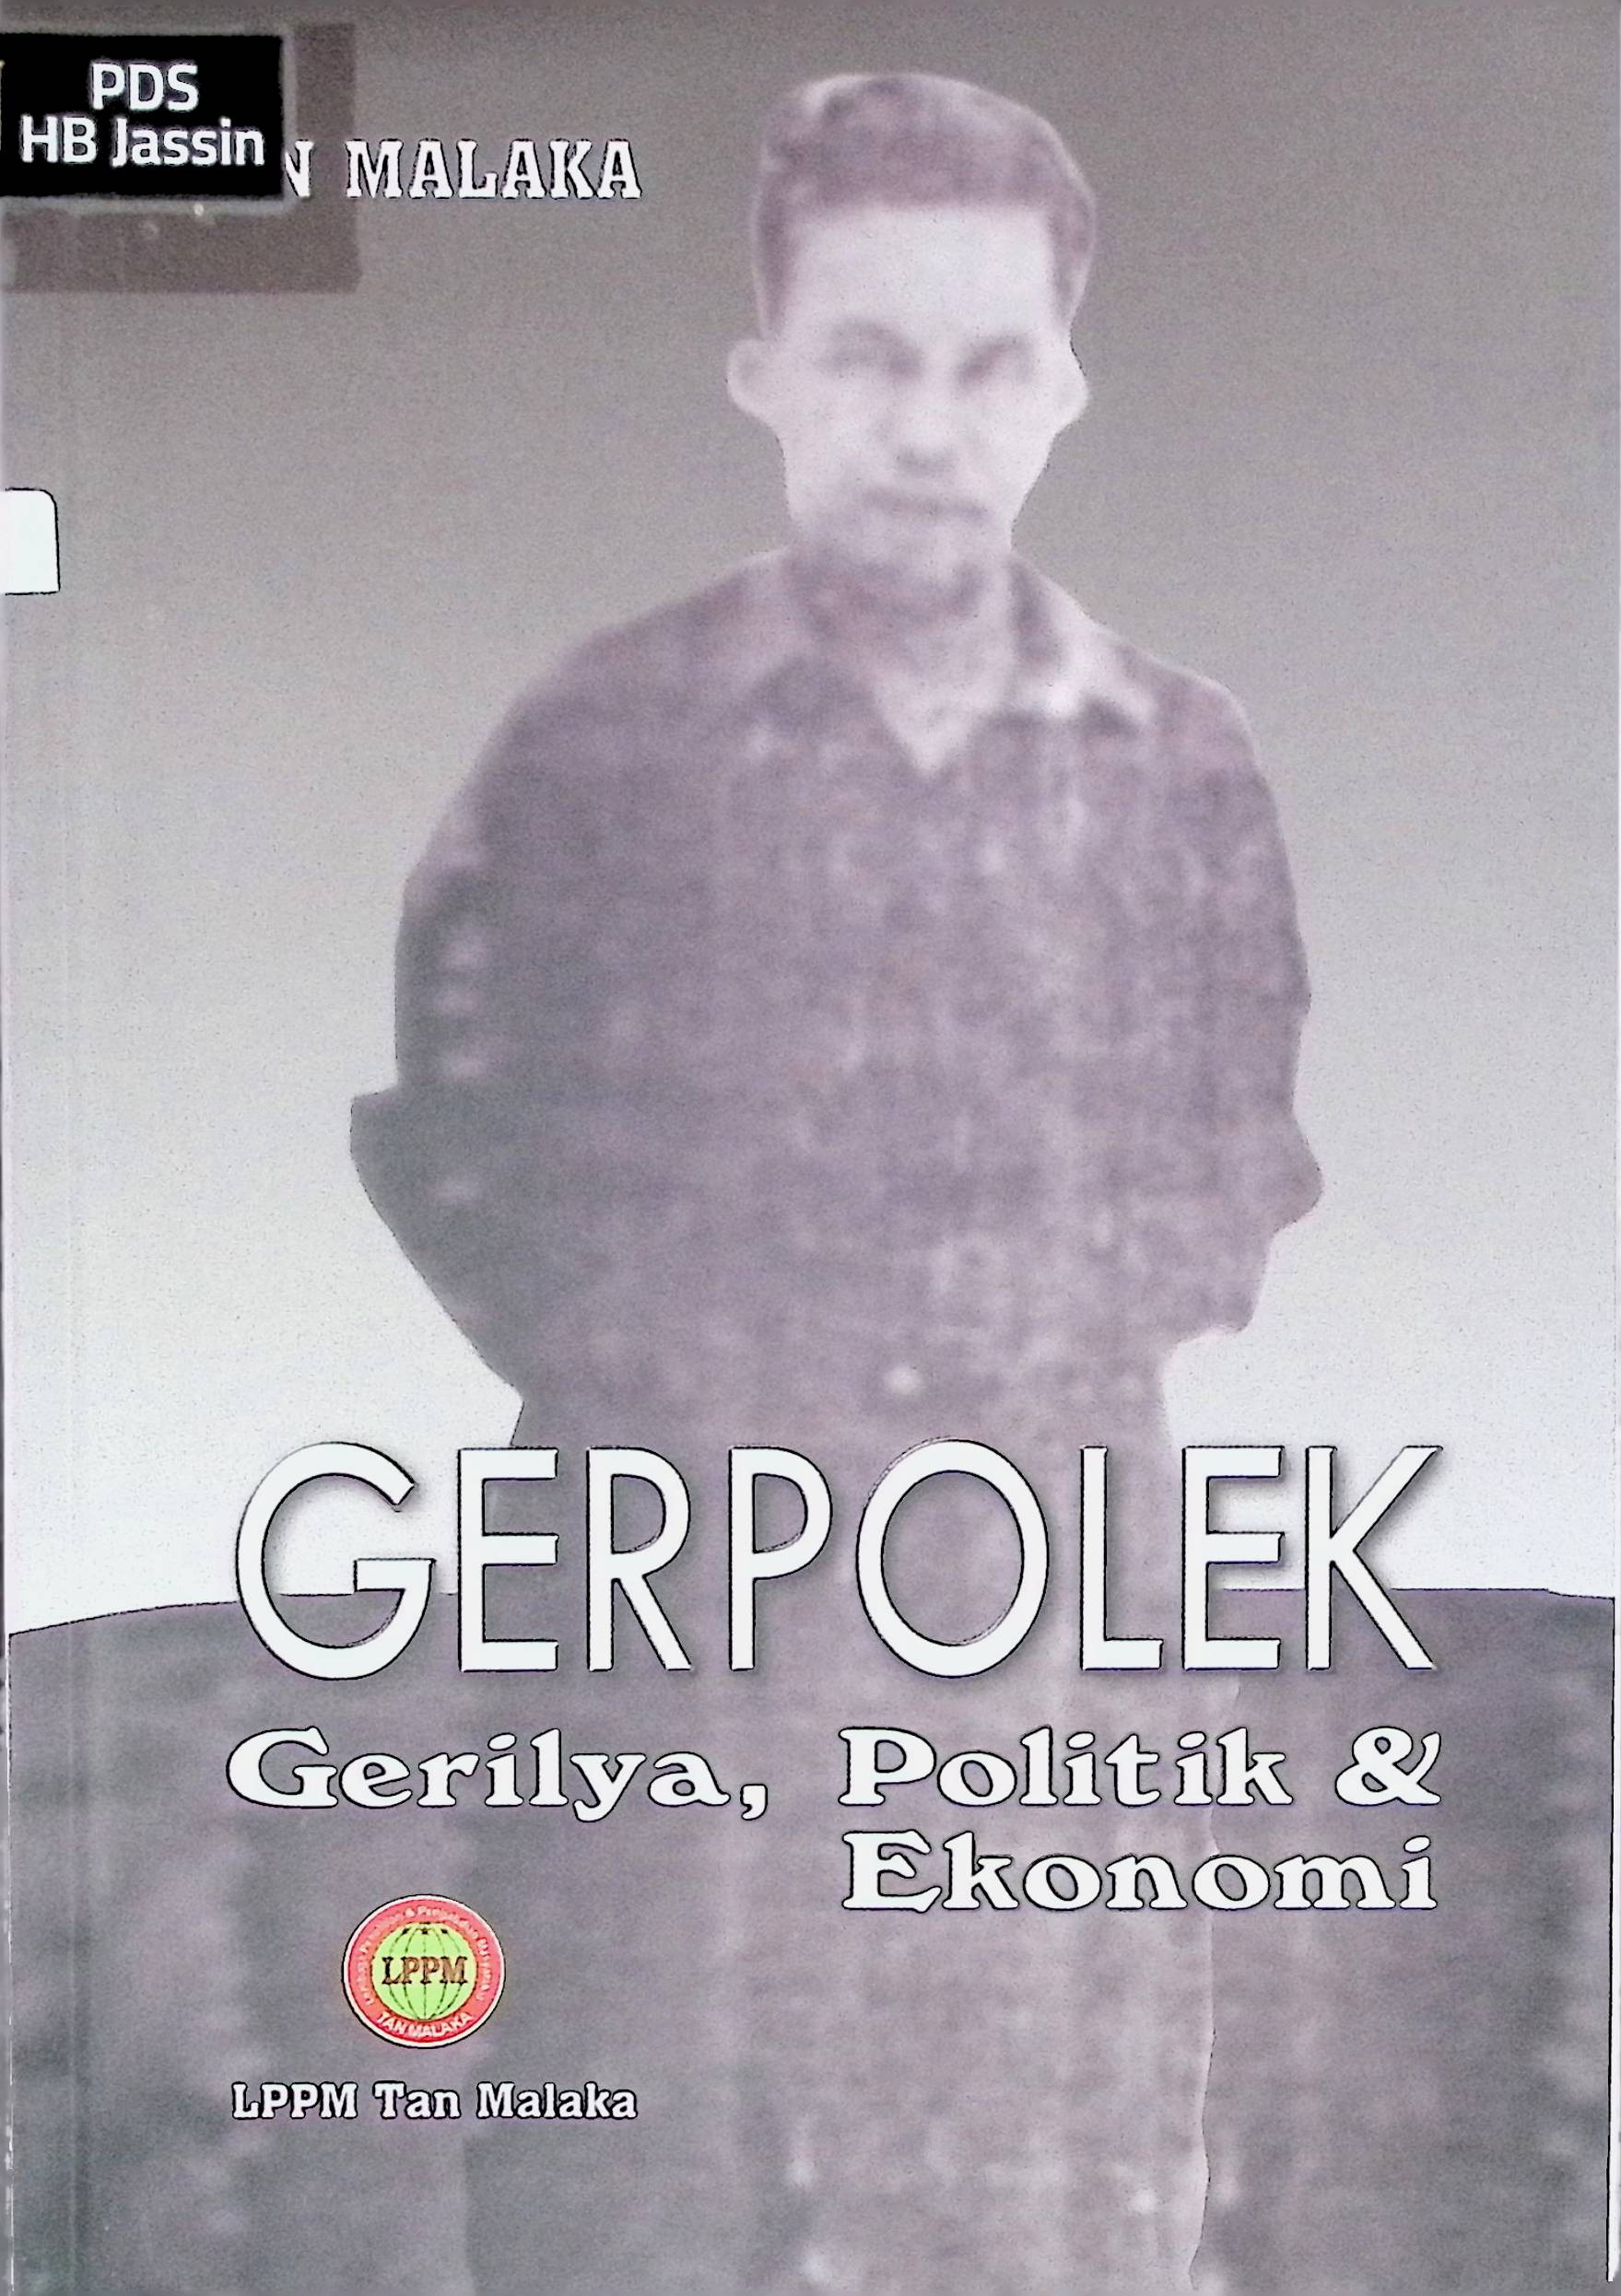 Gerpolek :  gerilya, politik & ekonomi